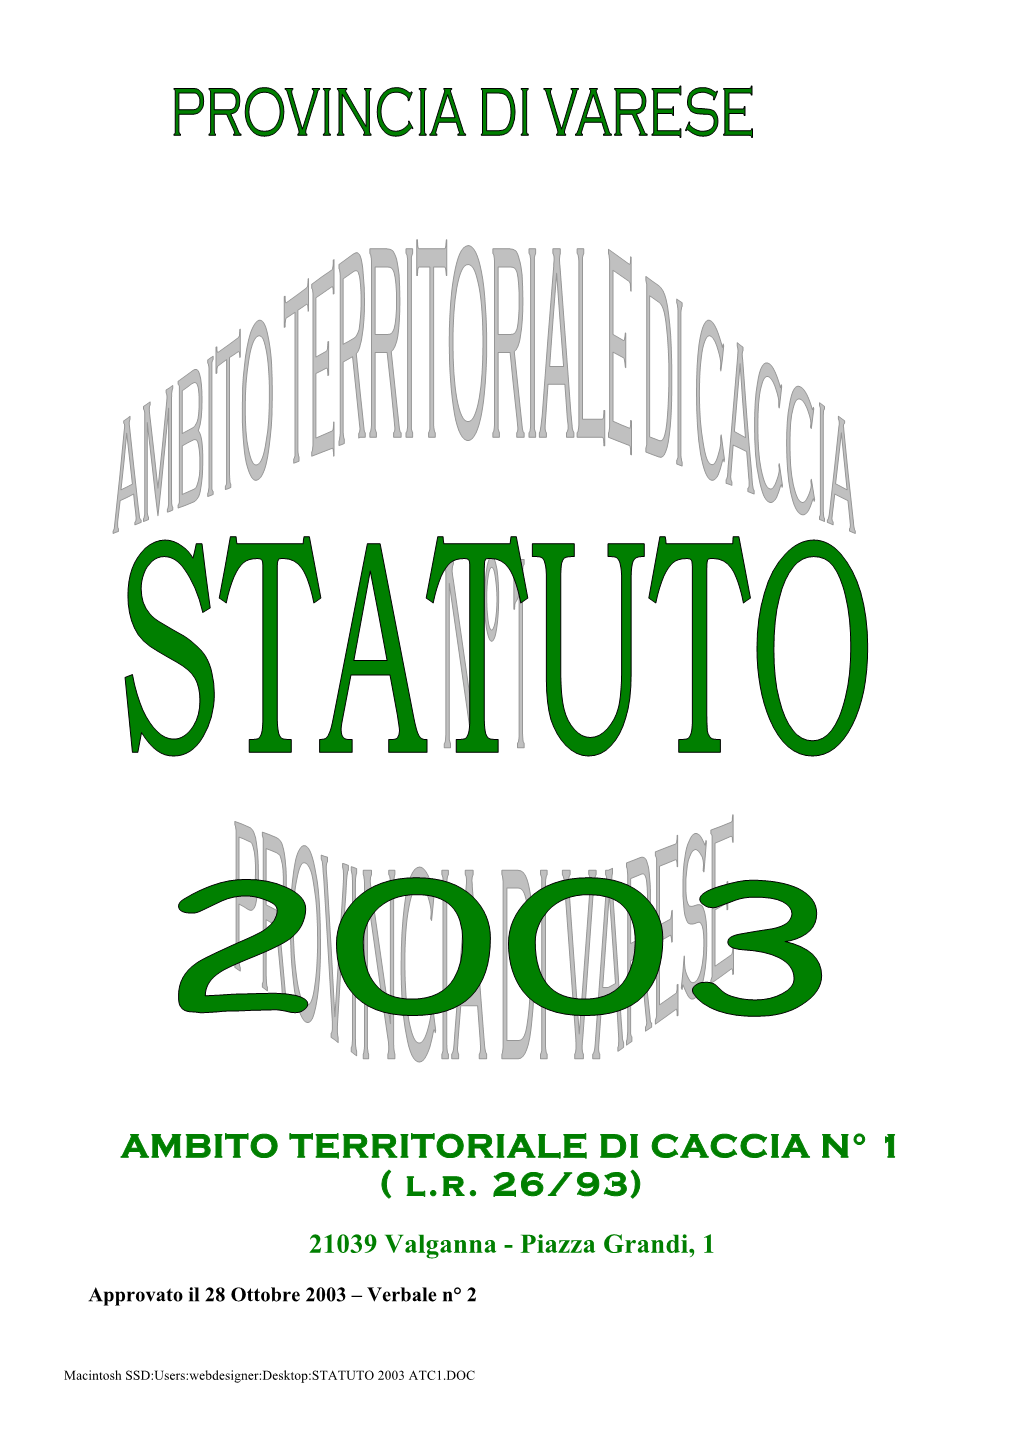 AMBITO TERRITORIALE DI CACCIA N° 1 ( L.R. 26/93)